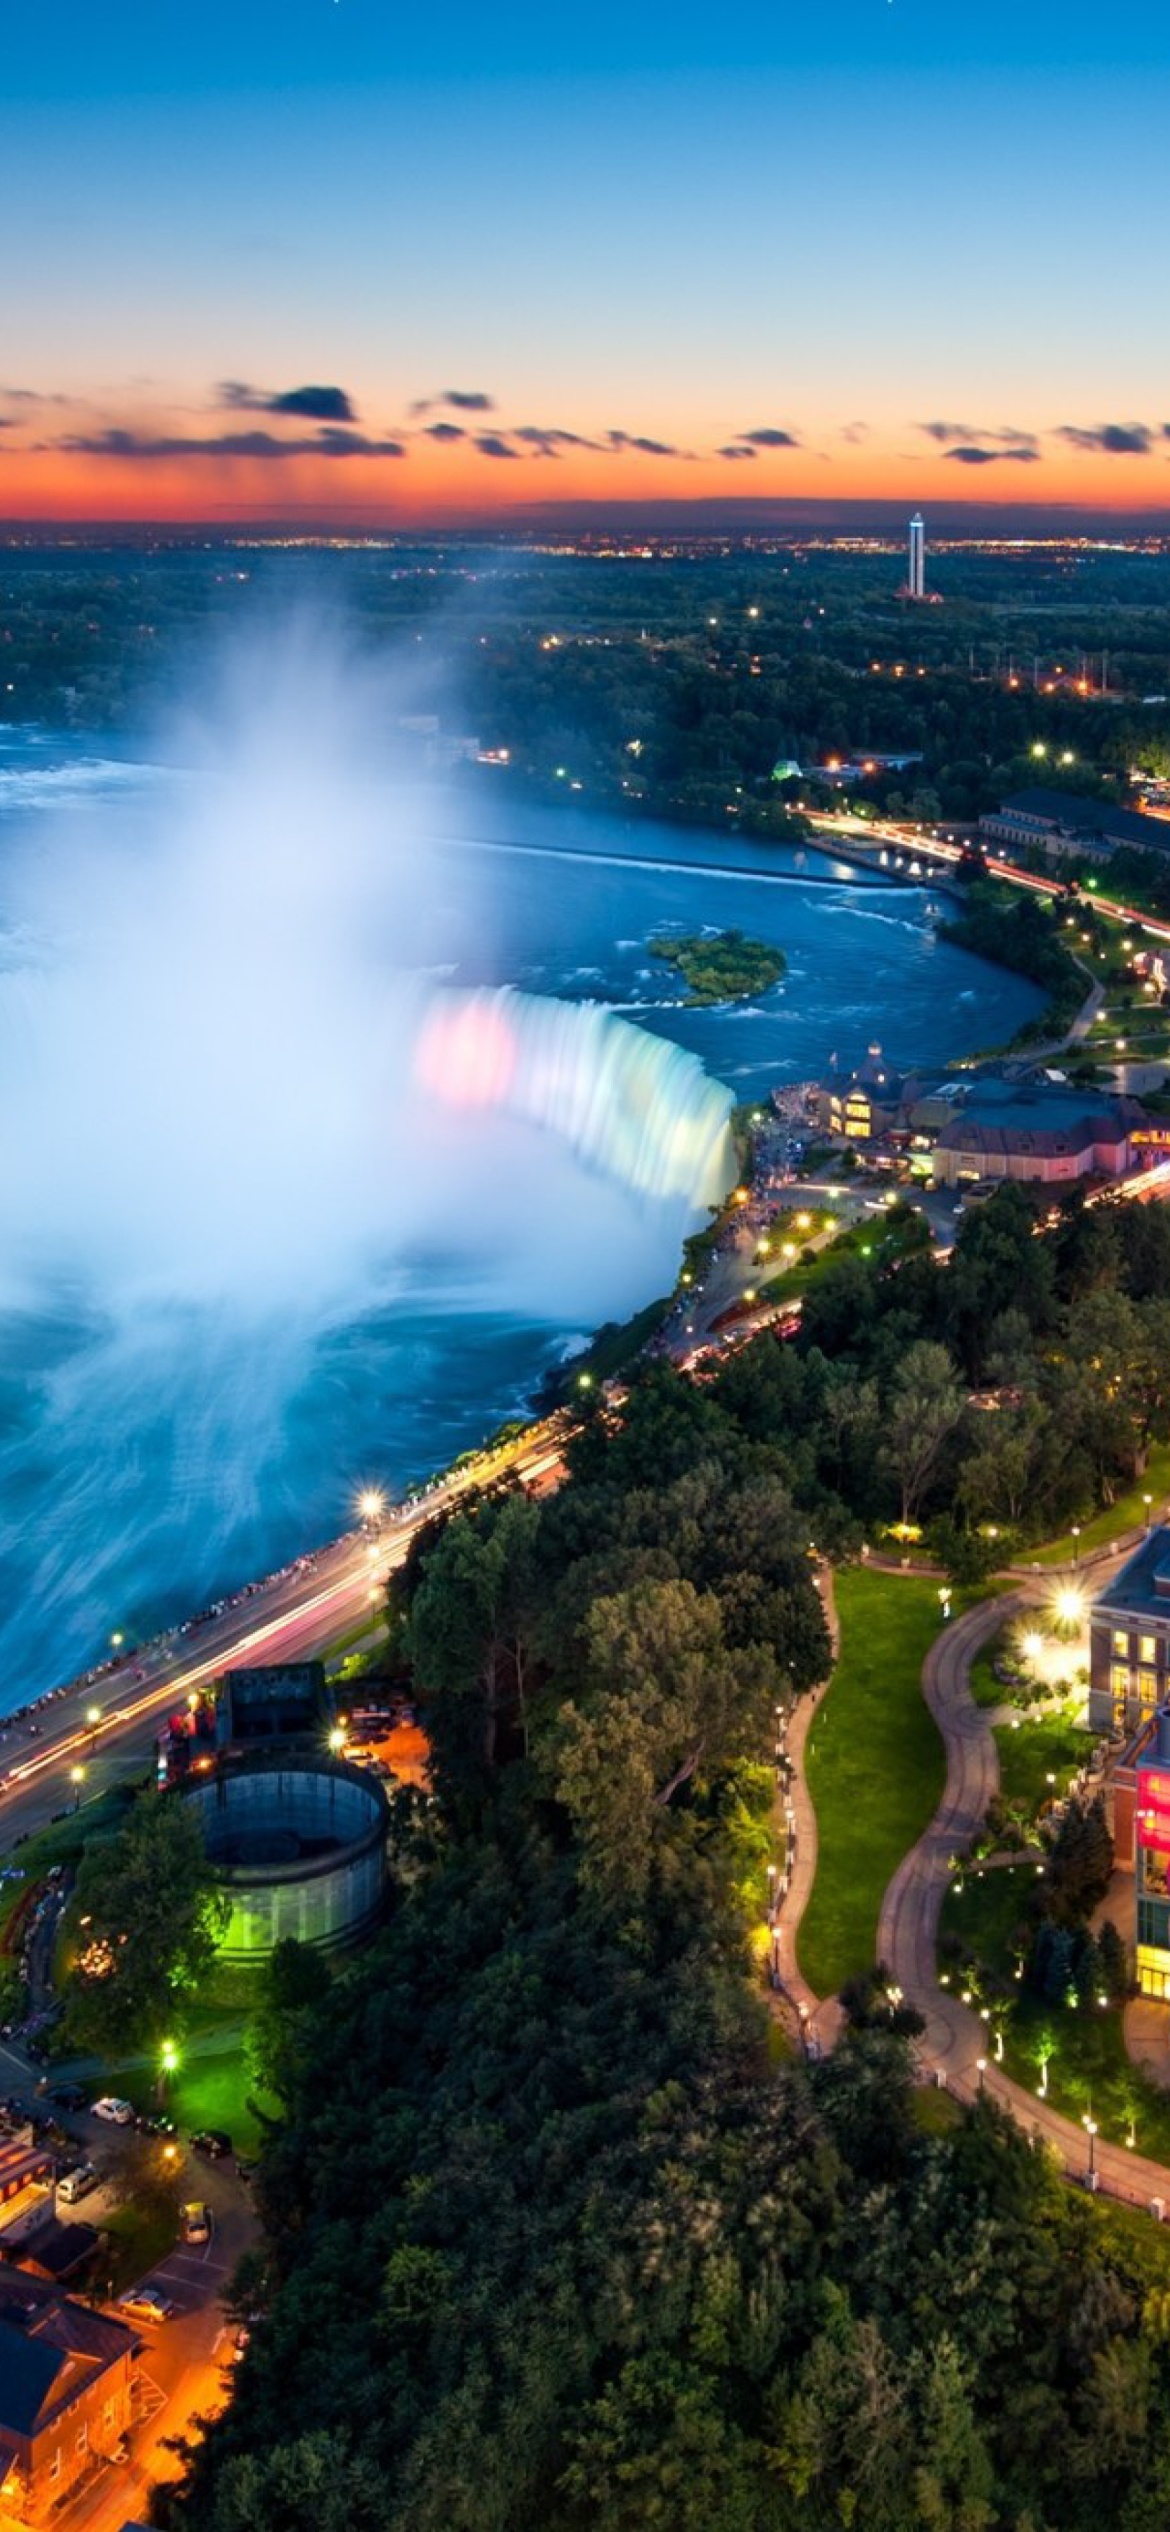 Sfondi Niagara Falls Ontario 1170x2532